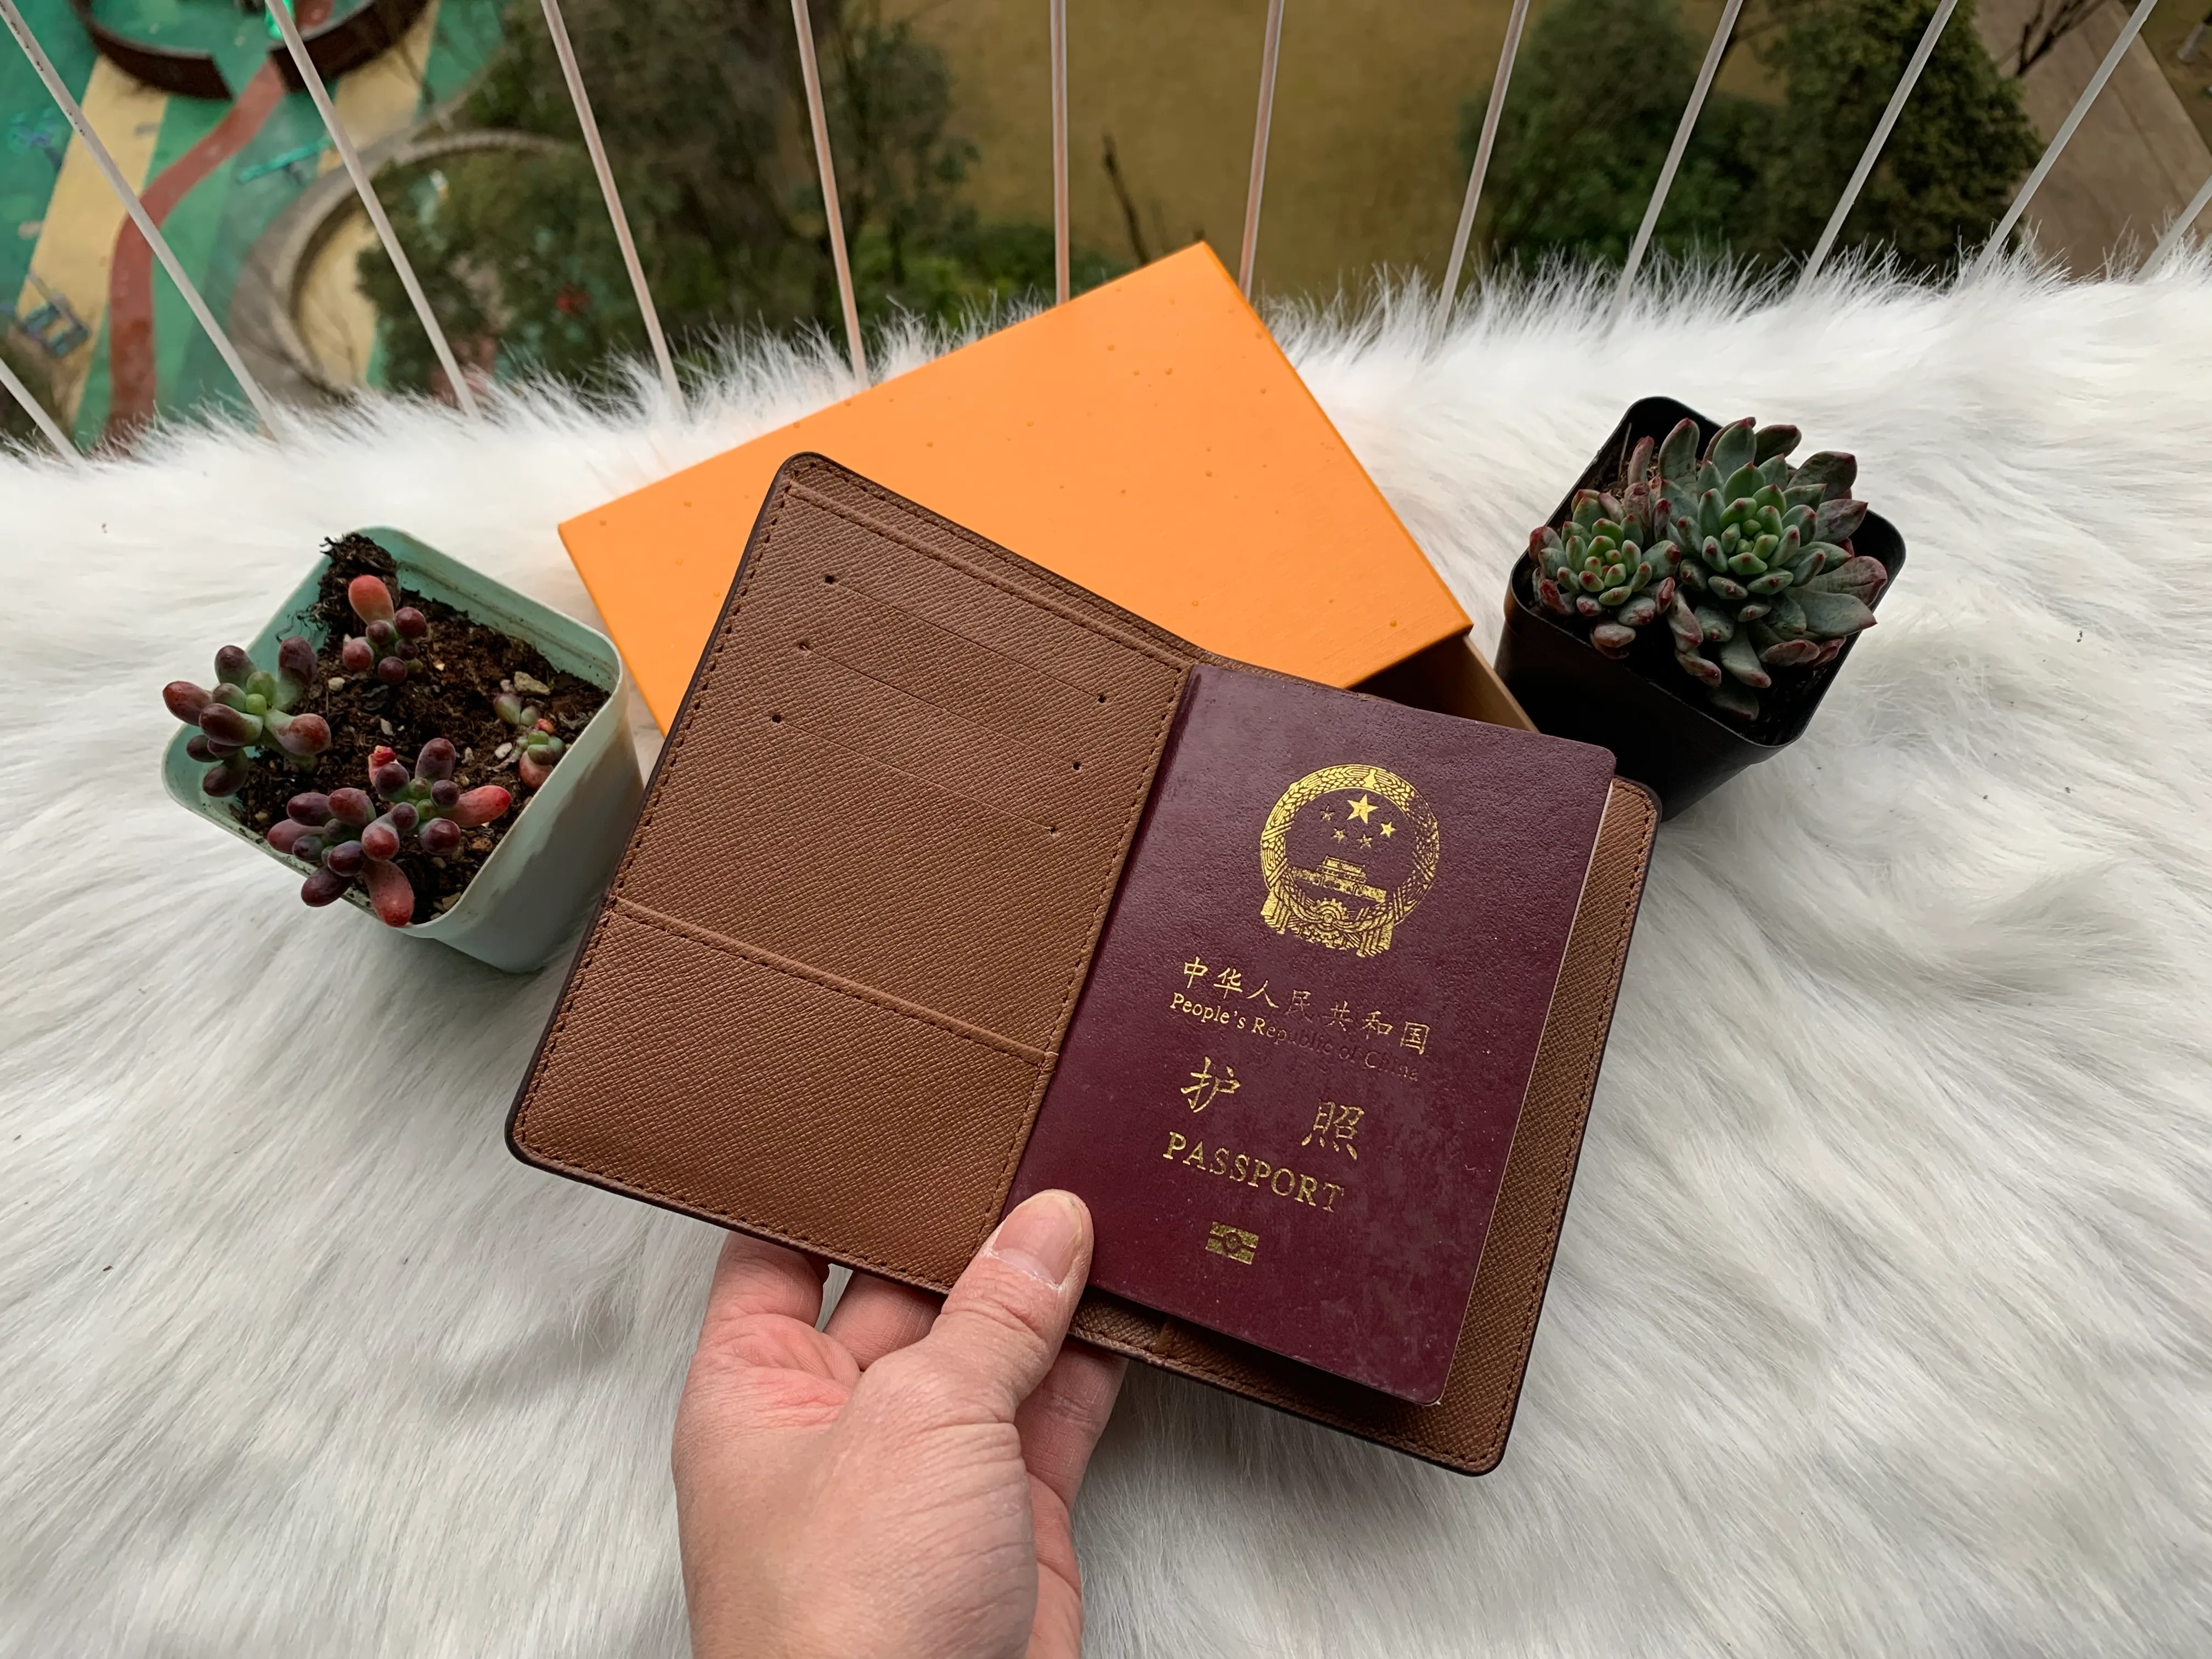 مصمم L جواز سفر النساء محافظ جلدية غطاء جواز سفر العلامة التجارية حامل بطاقة الائتمان رجال الأعمال محفظة Carteira